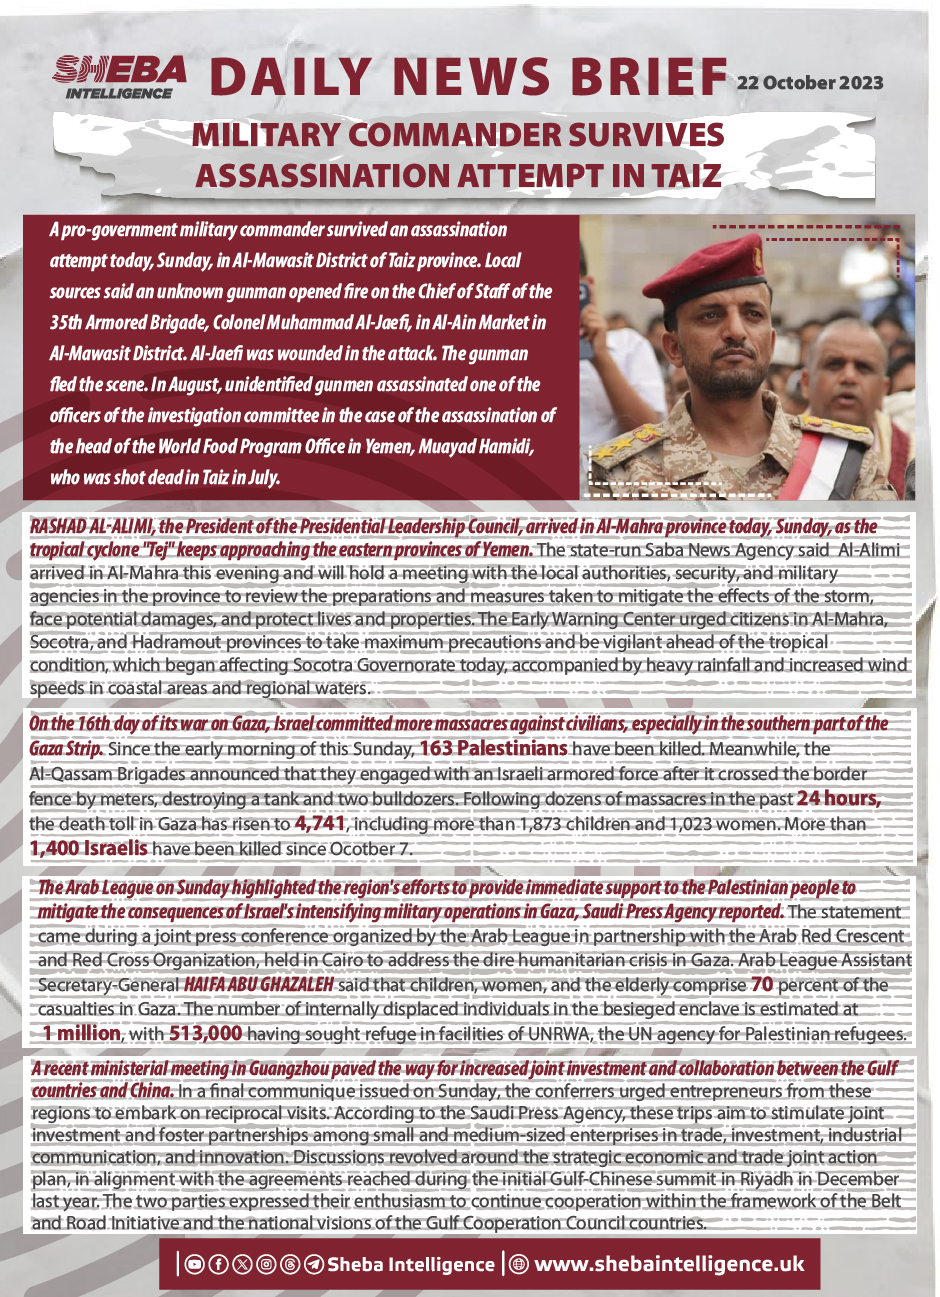 Military Commander Survives Assassination Attempt in Taiz